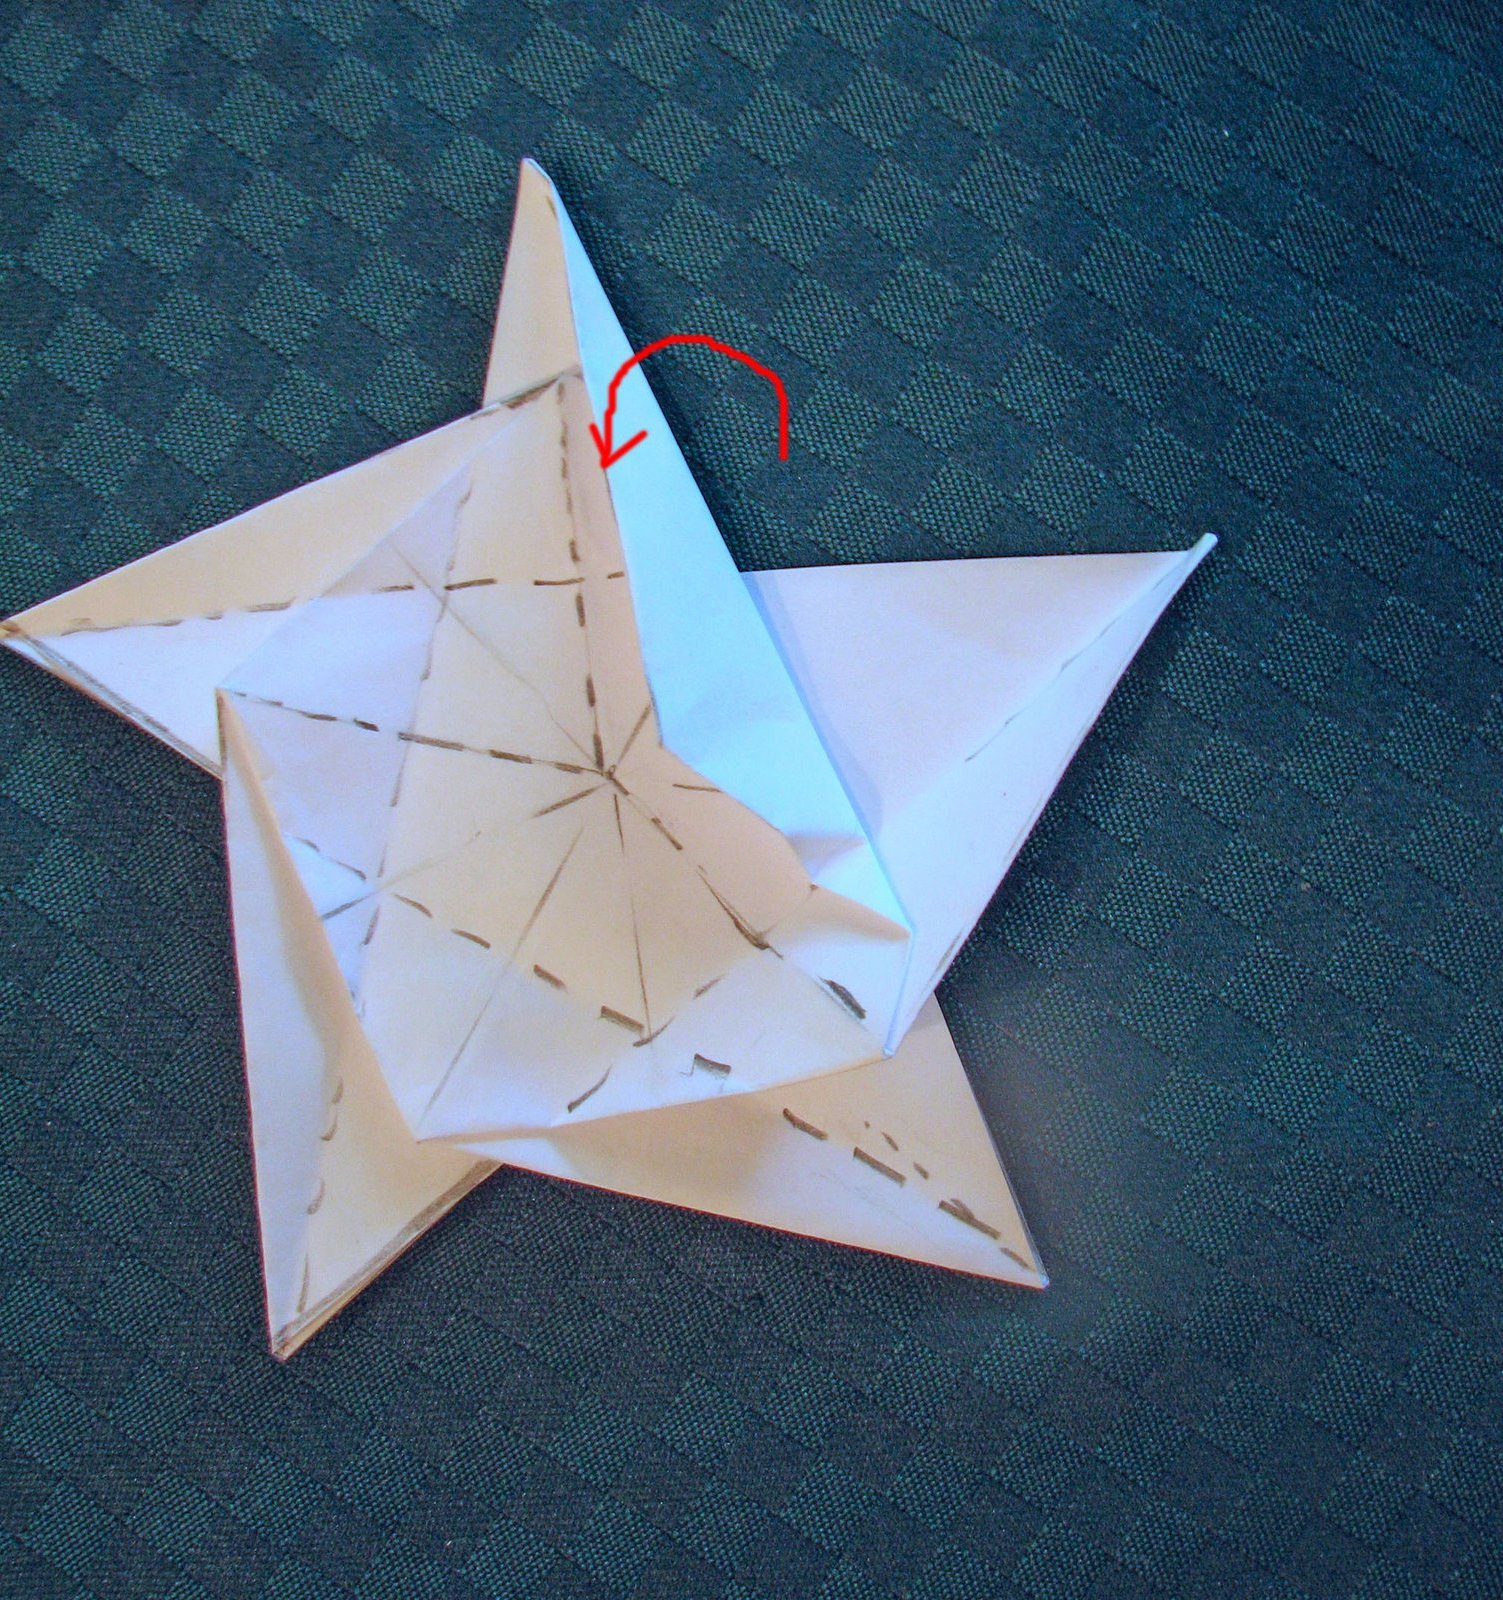 Поделки к 23 февраля своими руками: звезда-оригами